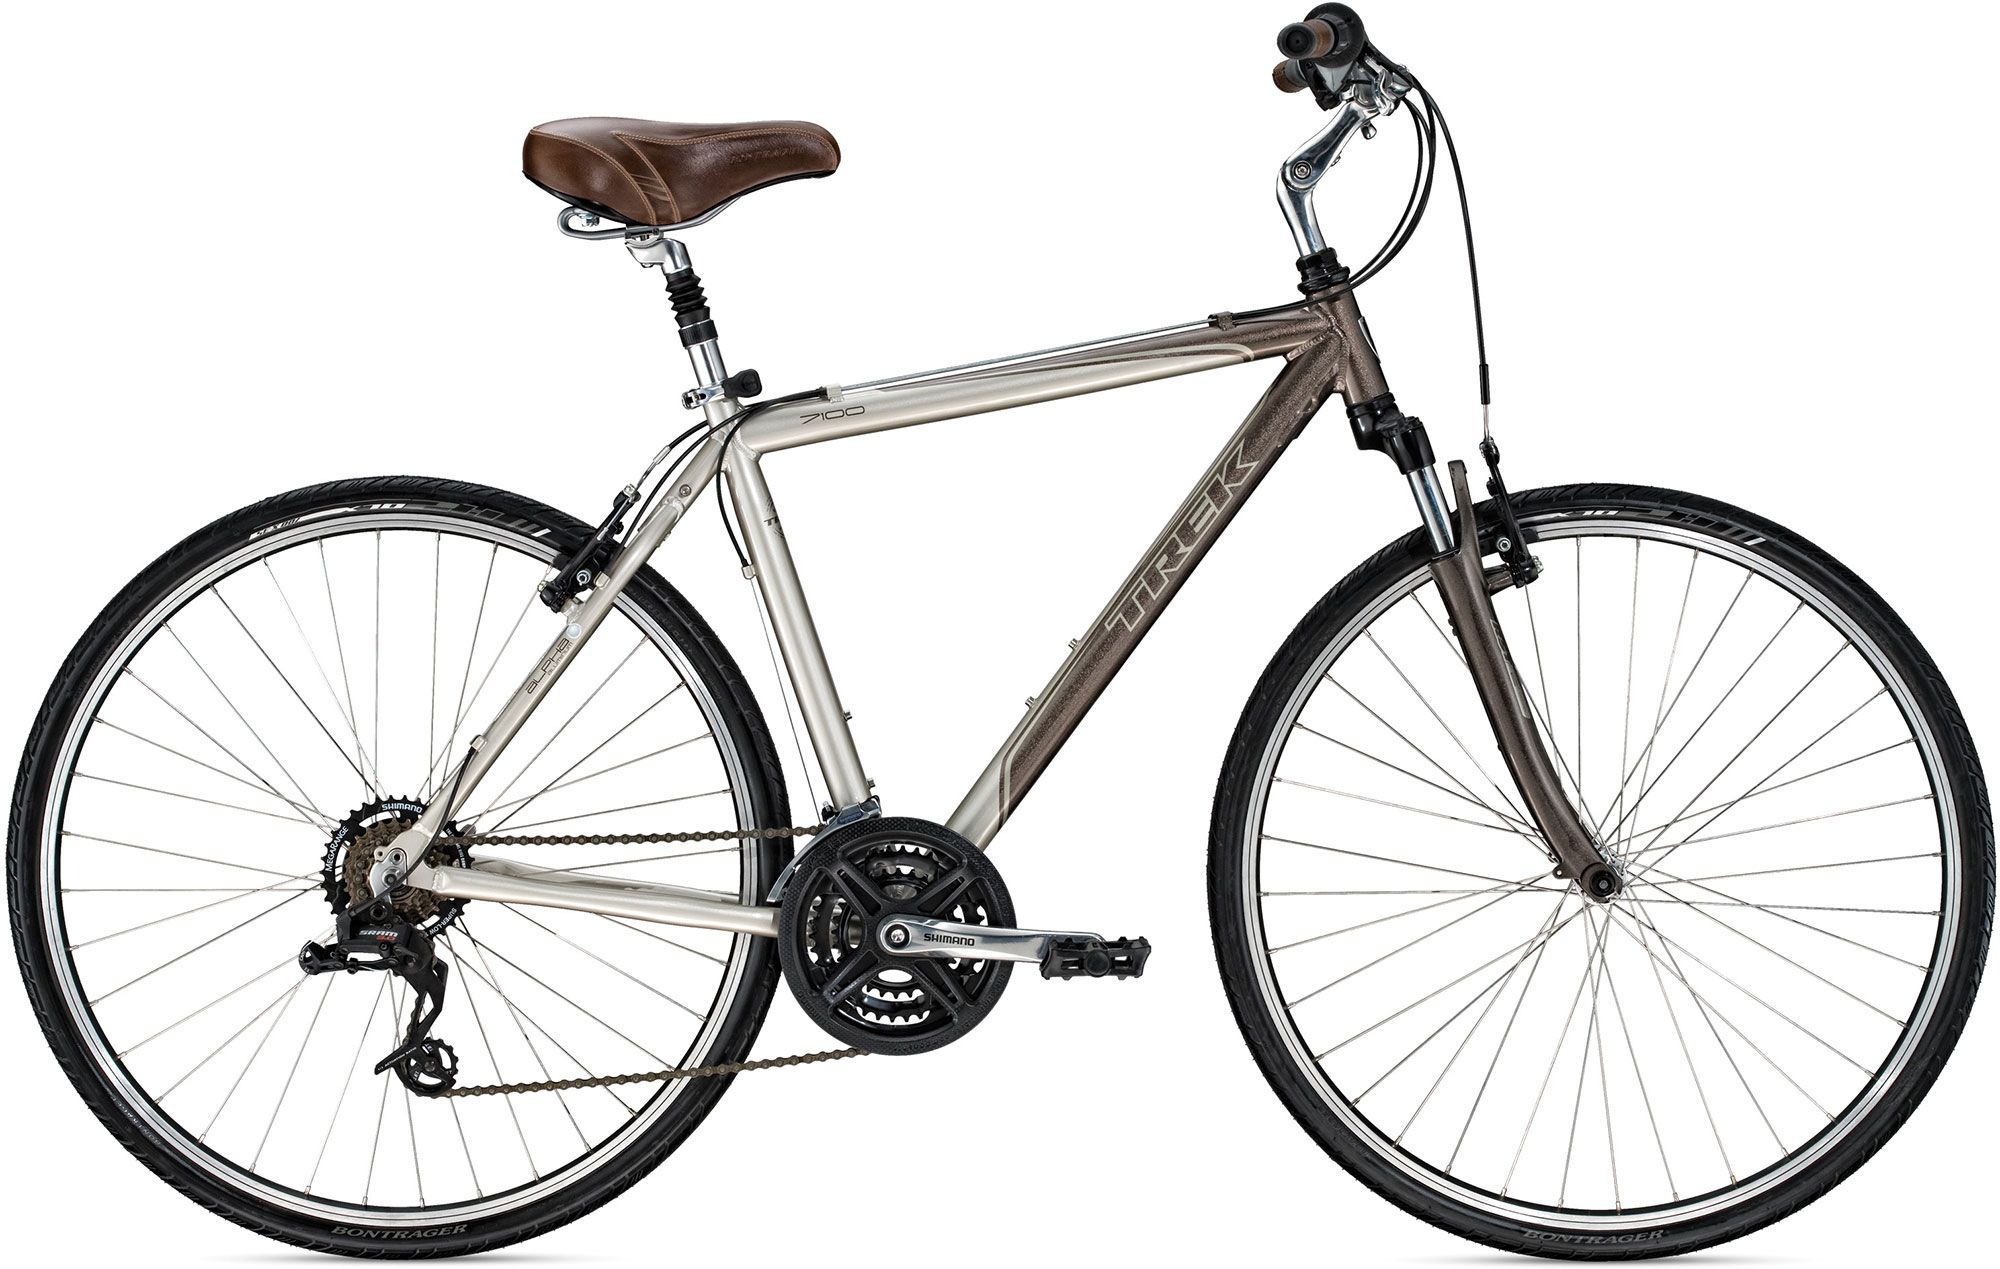 2010 Trek 7100 - Bicycle Details 